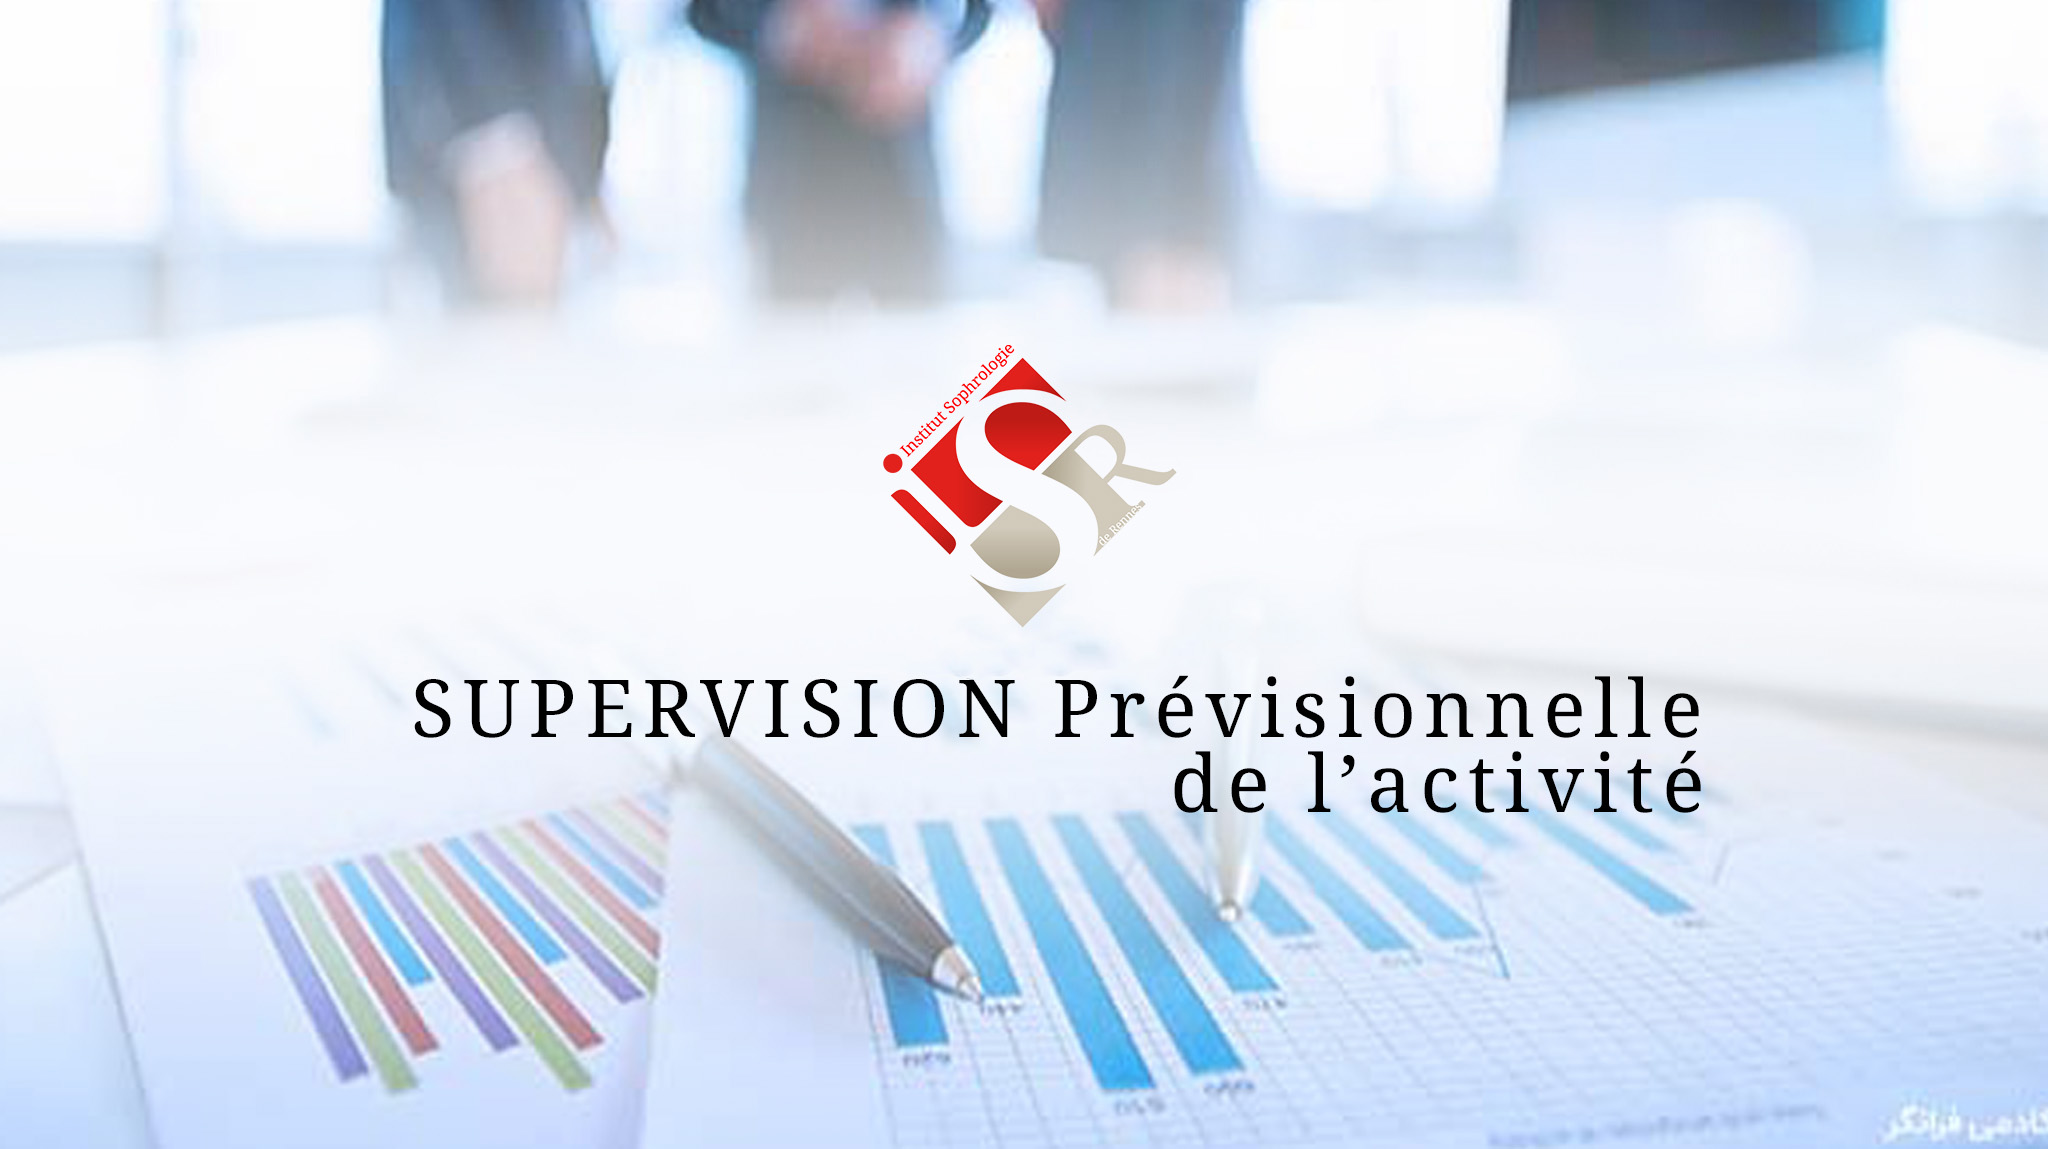 PL_Supervision-prévisionnelle-activité